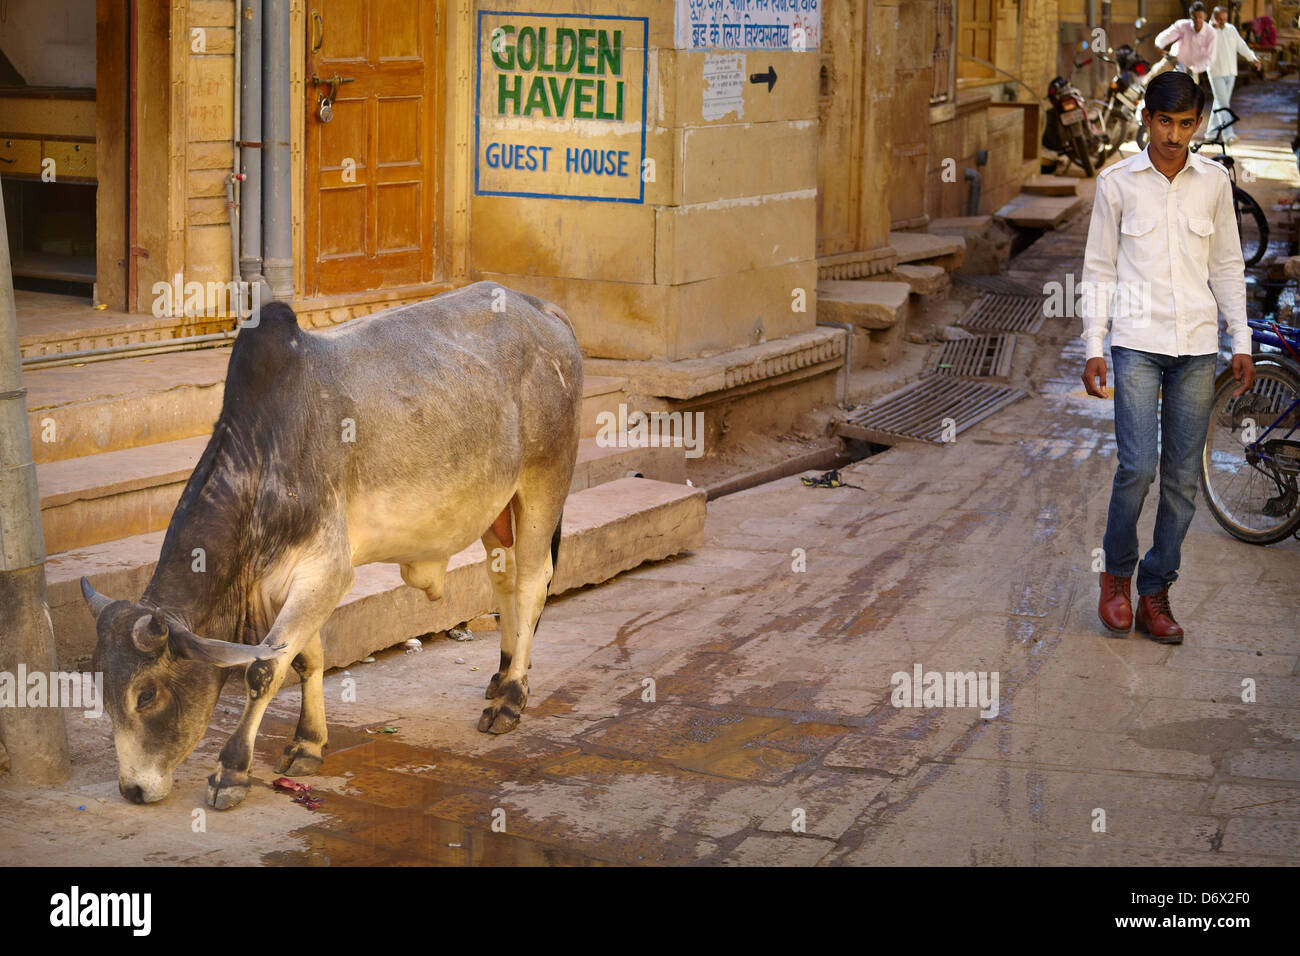 Straßenszene mit Kuh und Indien Mann zu Fuß, Jaisalmer, Rajasthan Zustand, Indien Stockfoto